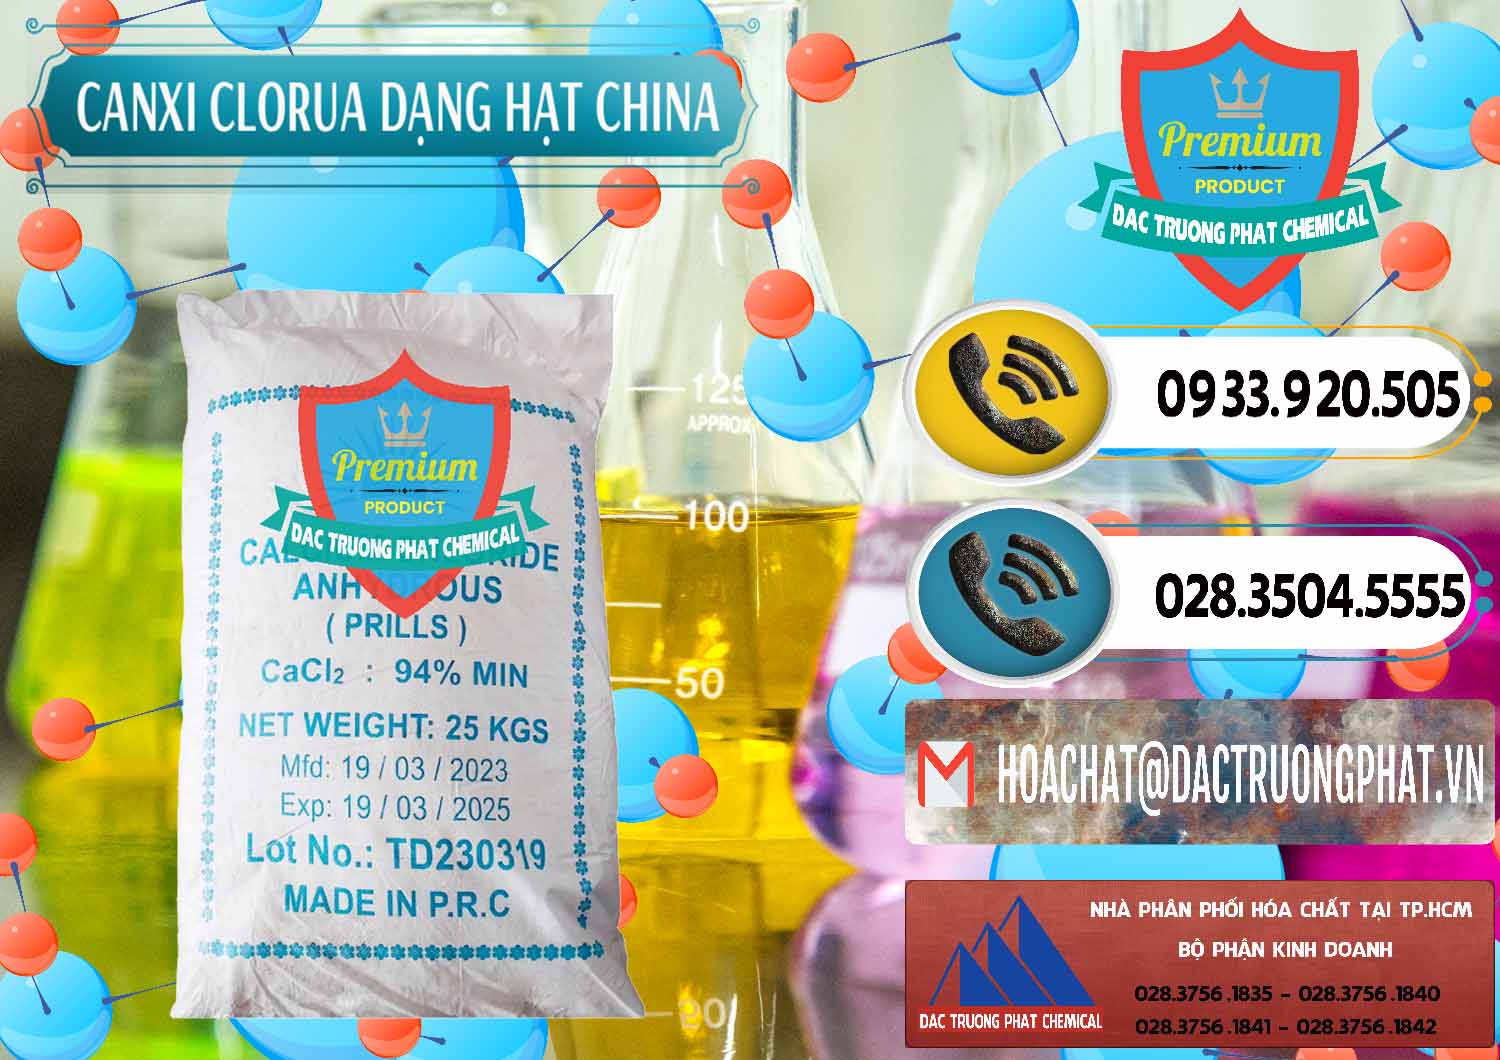 Công ty nhập khẩu & bán CaCl2 – Canxi Clorua 94% Dạng Hạt Trung Quốc China - 0373 - Công ty chuyên kinh doanh _ phân phối hóa chất tại TP.HCM - hoachatdetnhuom.vn